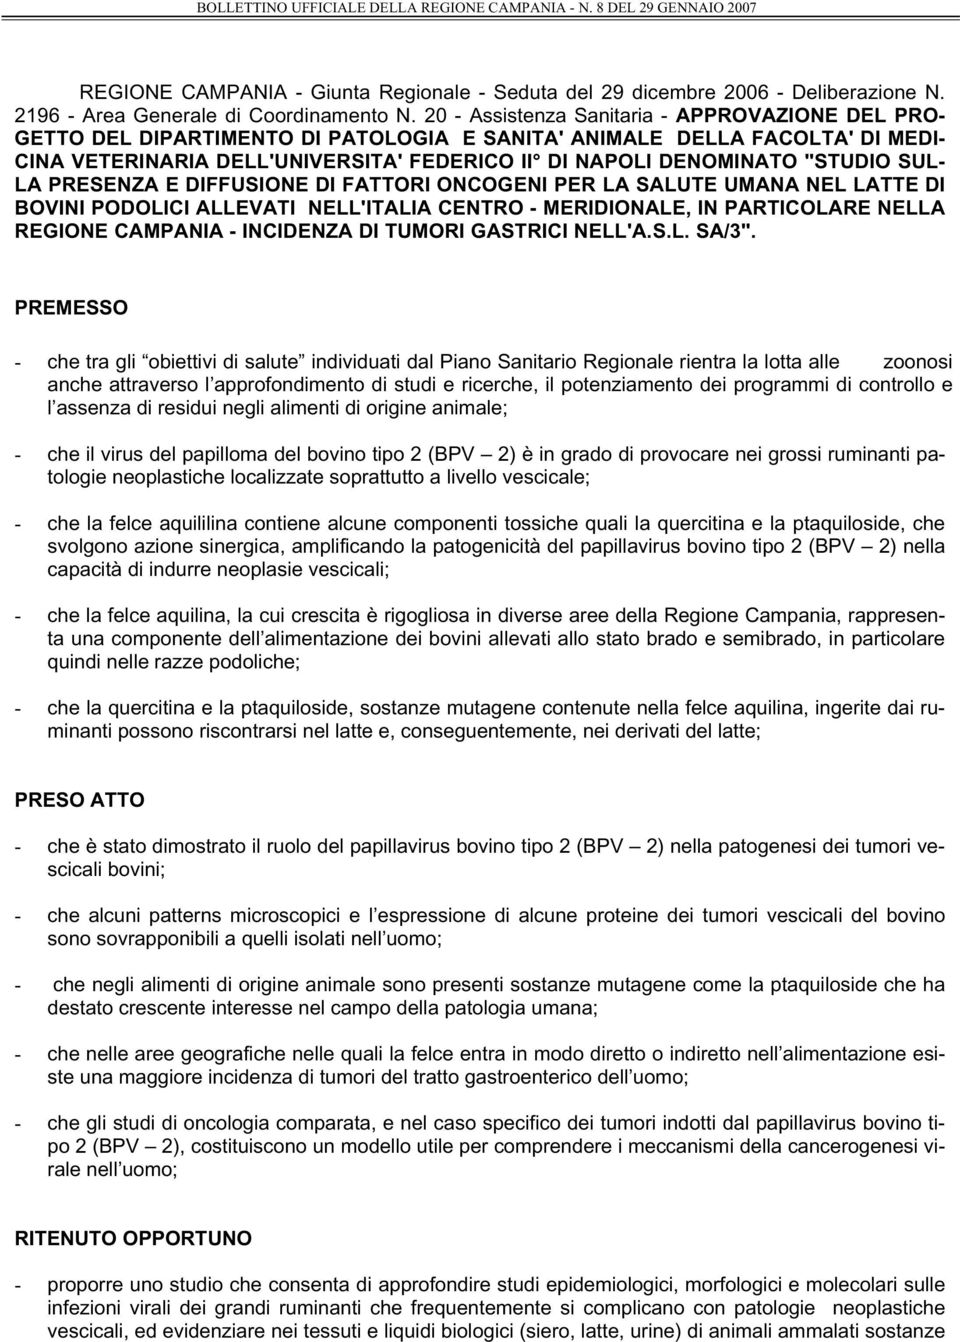 "STUDIO SUL- LA PRESENZA E DIFFUSIONE DI FATTORI ONCOGENI PER LA SALUTE UMANA NEL LATTE DI BOVINI PODOLICI ALLEVATI NELL'ITALIA CENTRO - MERIDIONALE, IN PARTICOLARE NELLA REGIONE CAMPANIA - INCIDENZA